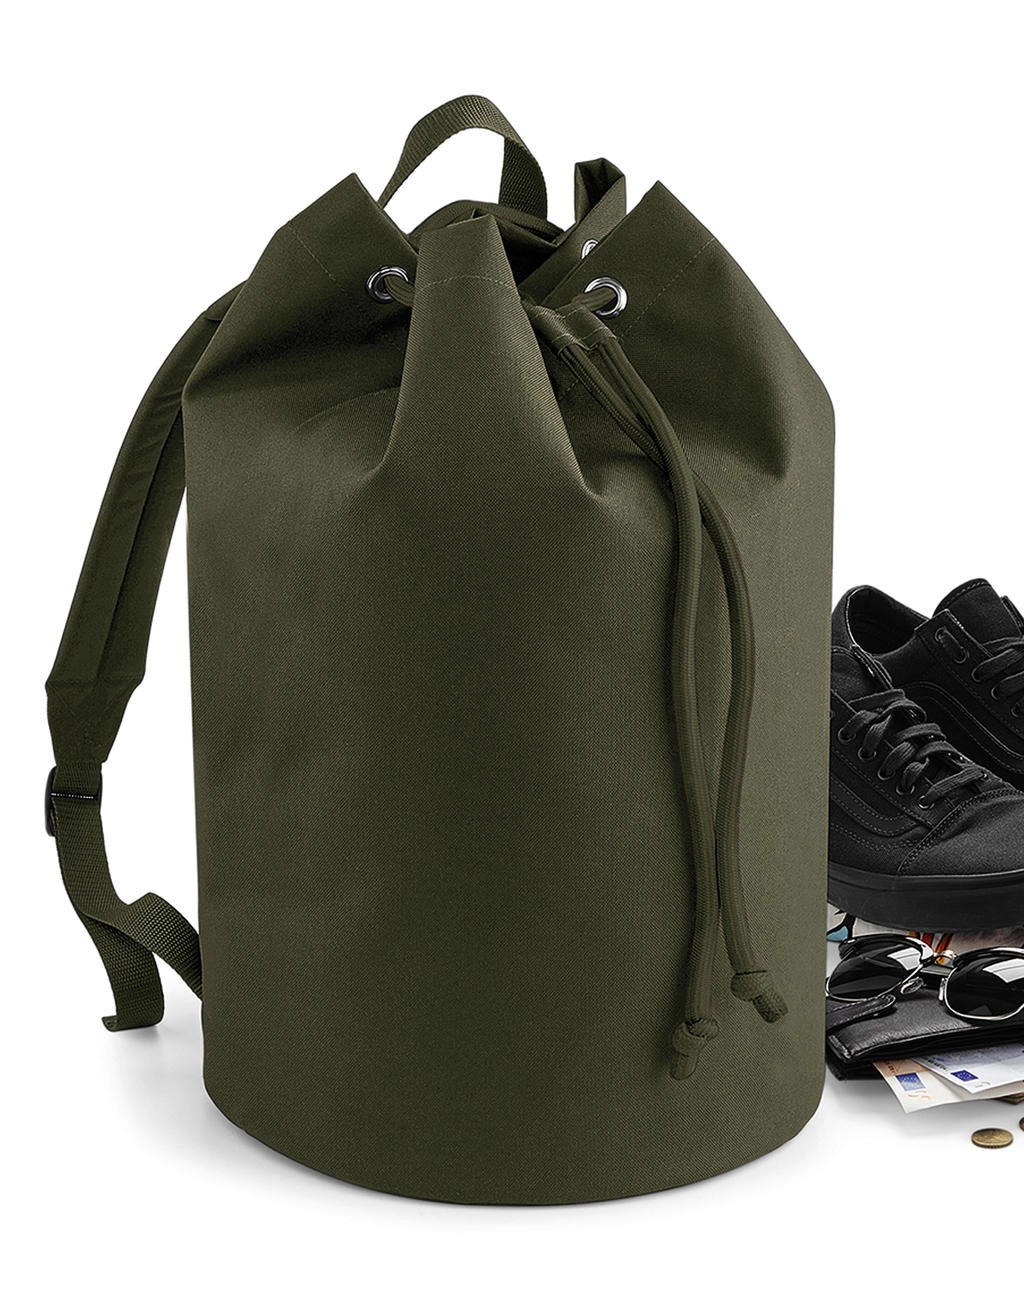 Original Drawstring Backpack zum Besticken und Bedrucken mit Ihren Logo, Schriftzug oder Motiv.